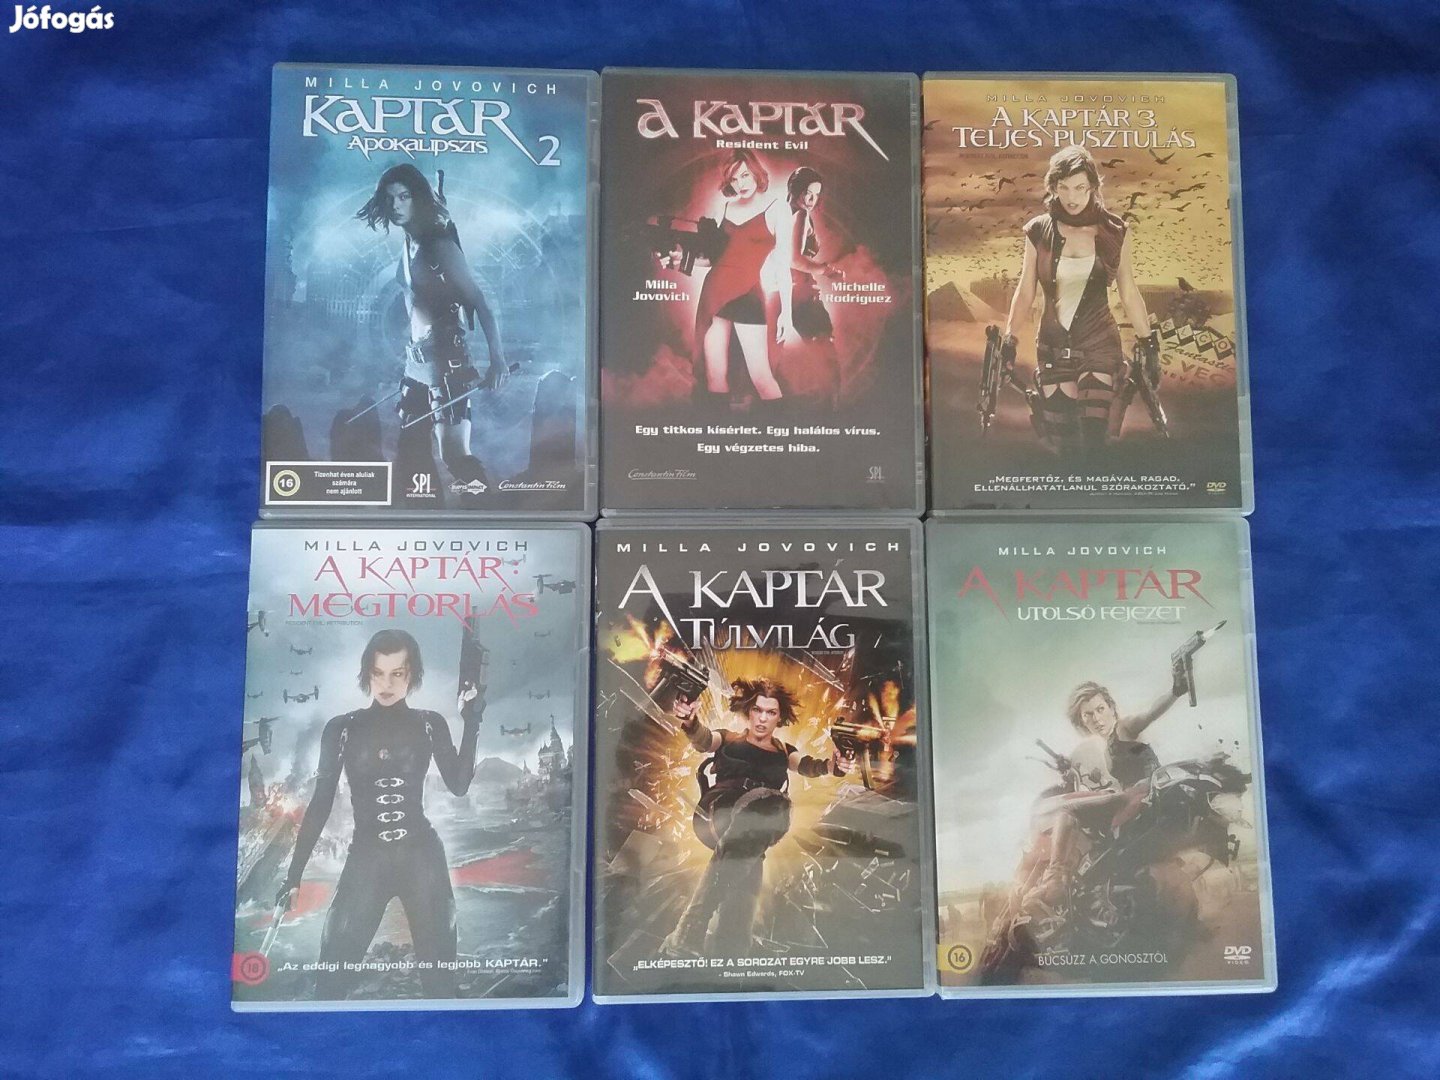 A Kaptár. A teljes Milla Jovovich 6 filmes dvd sorozat. Szinkr